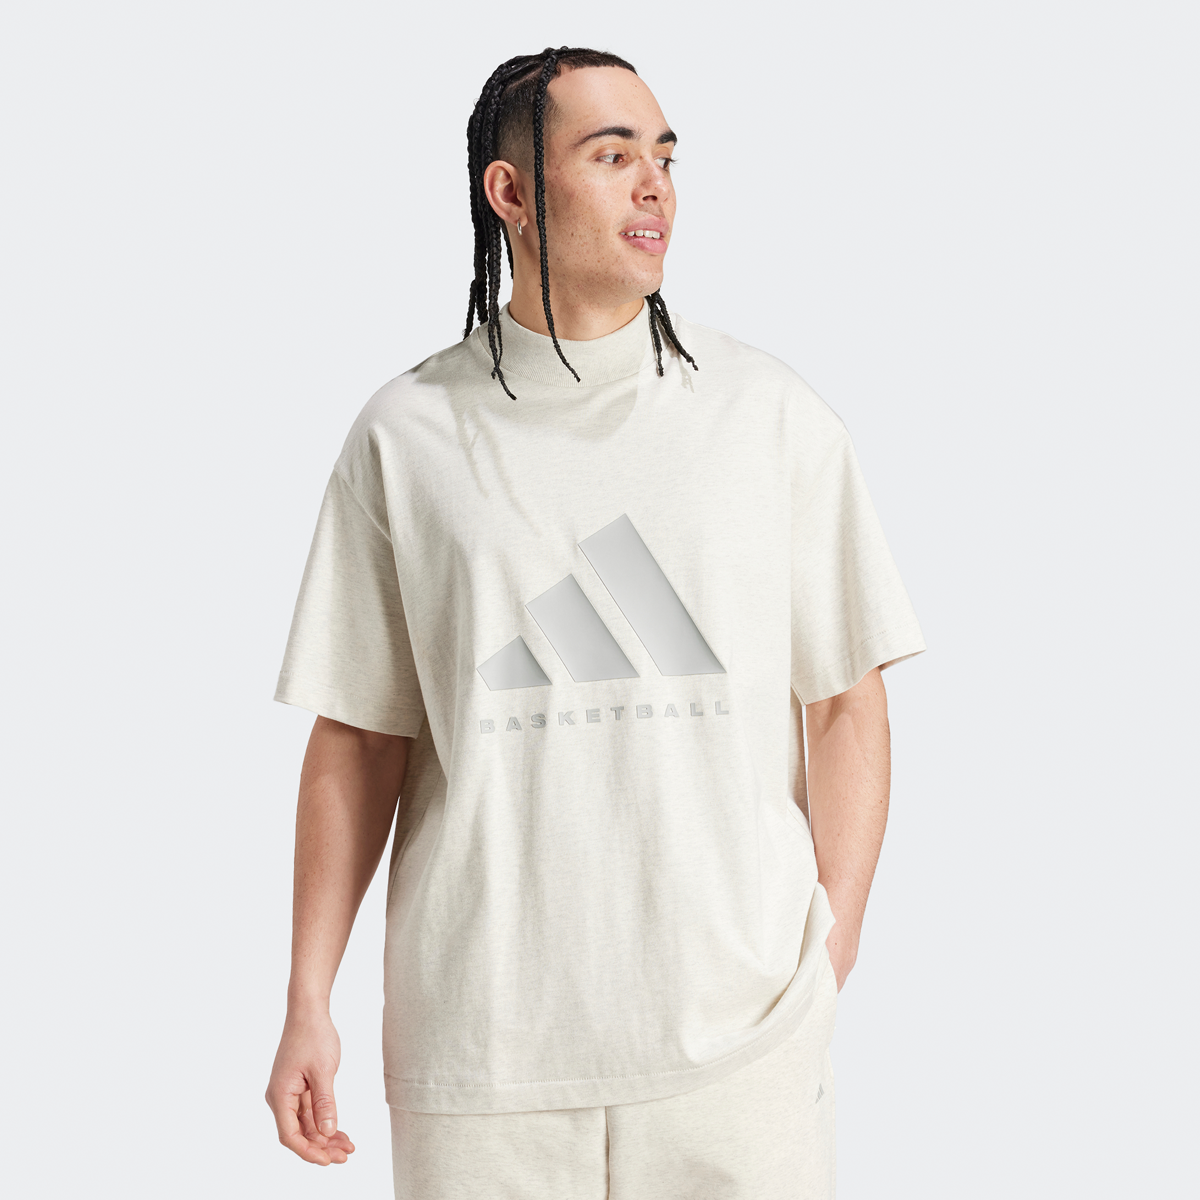 Adidas Originals One Cotton Jersey T-shirt T-shirts Heren cream white mel. maat: L beschikbare maaten:S M L XL